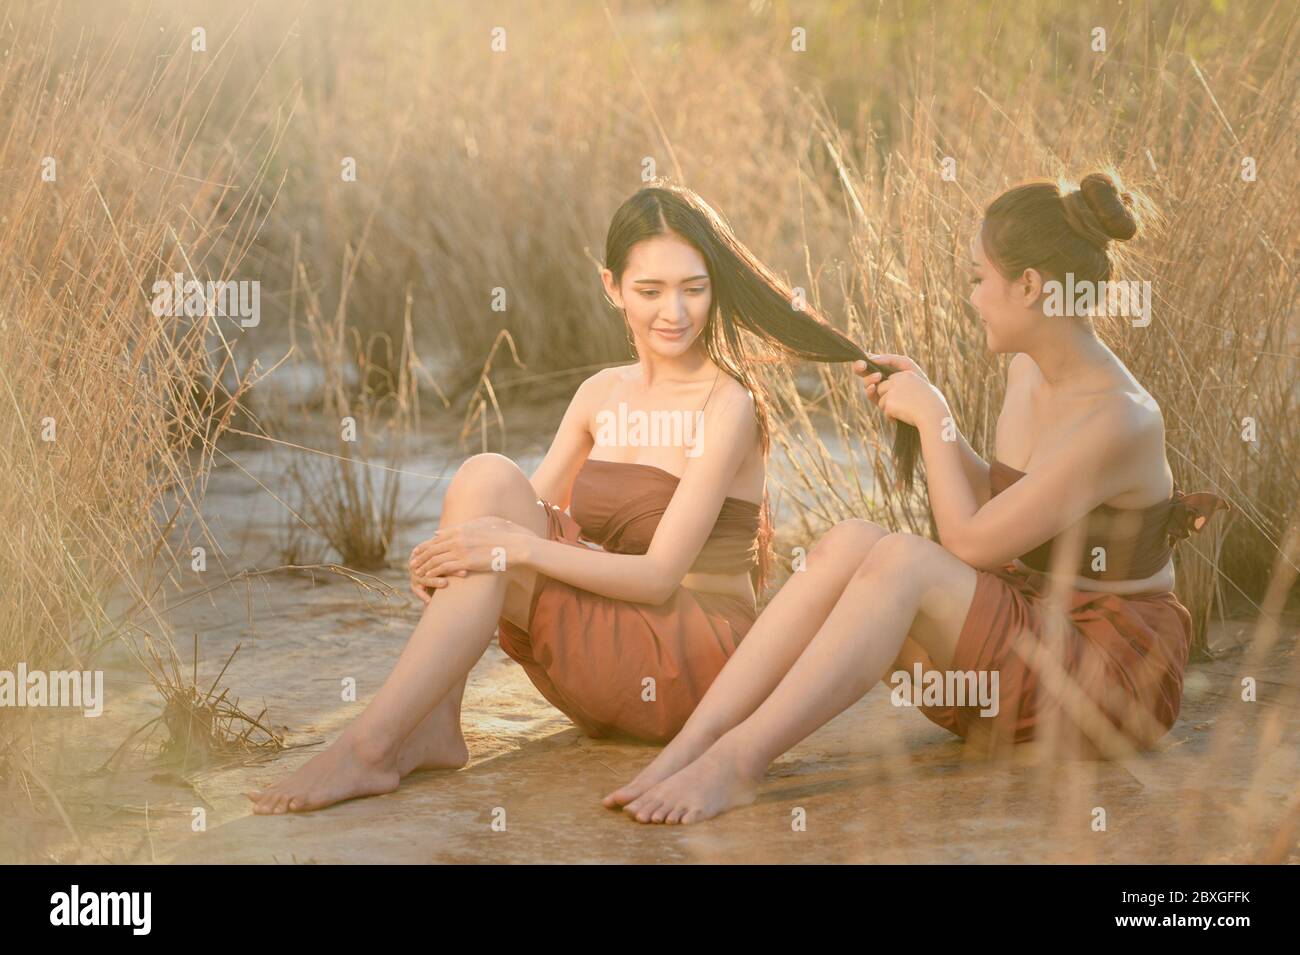 Frau am Strand sitzend, die mit den Haaren ihres Freundes bezahlt, Thailand Stockfoto